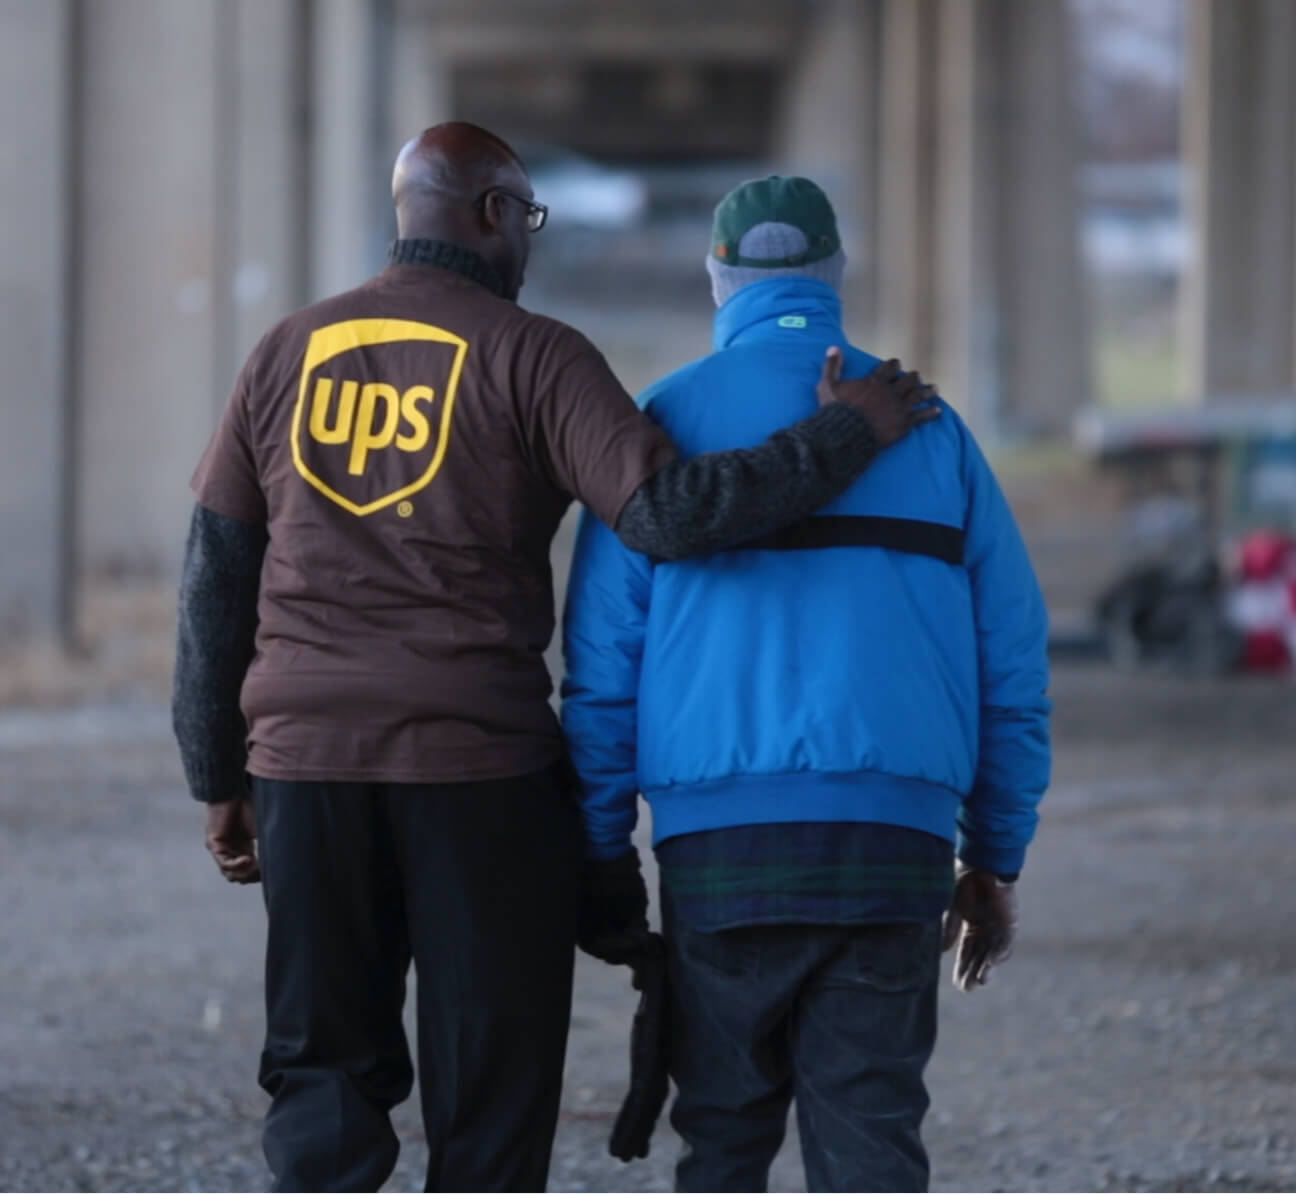 UPS worker with arm around man